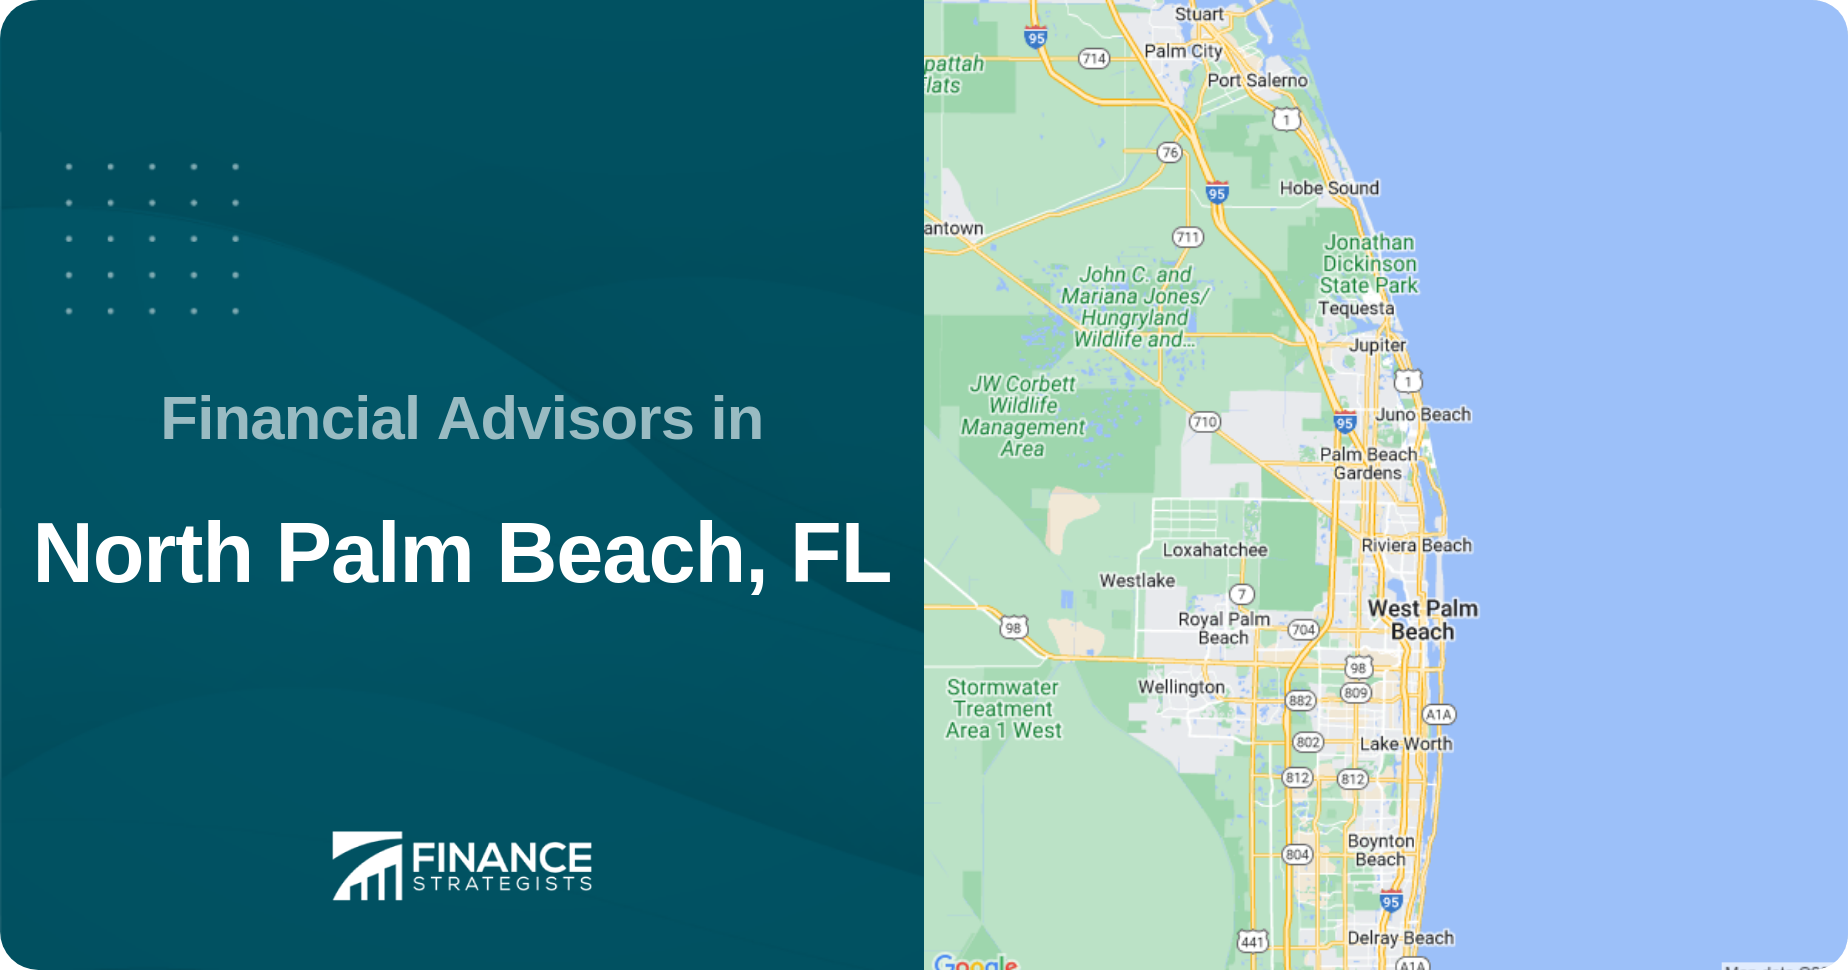 Financial Advisors in North Palm Beach, FL